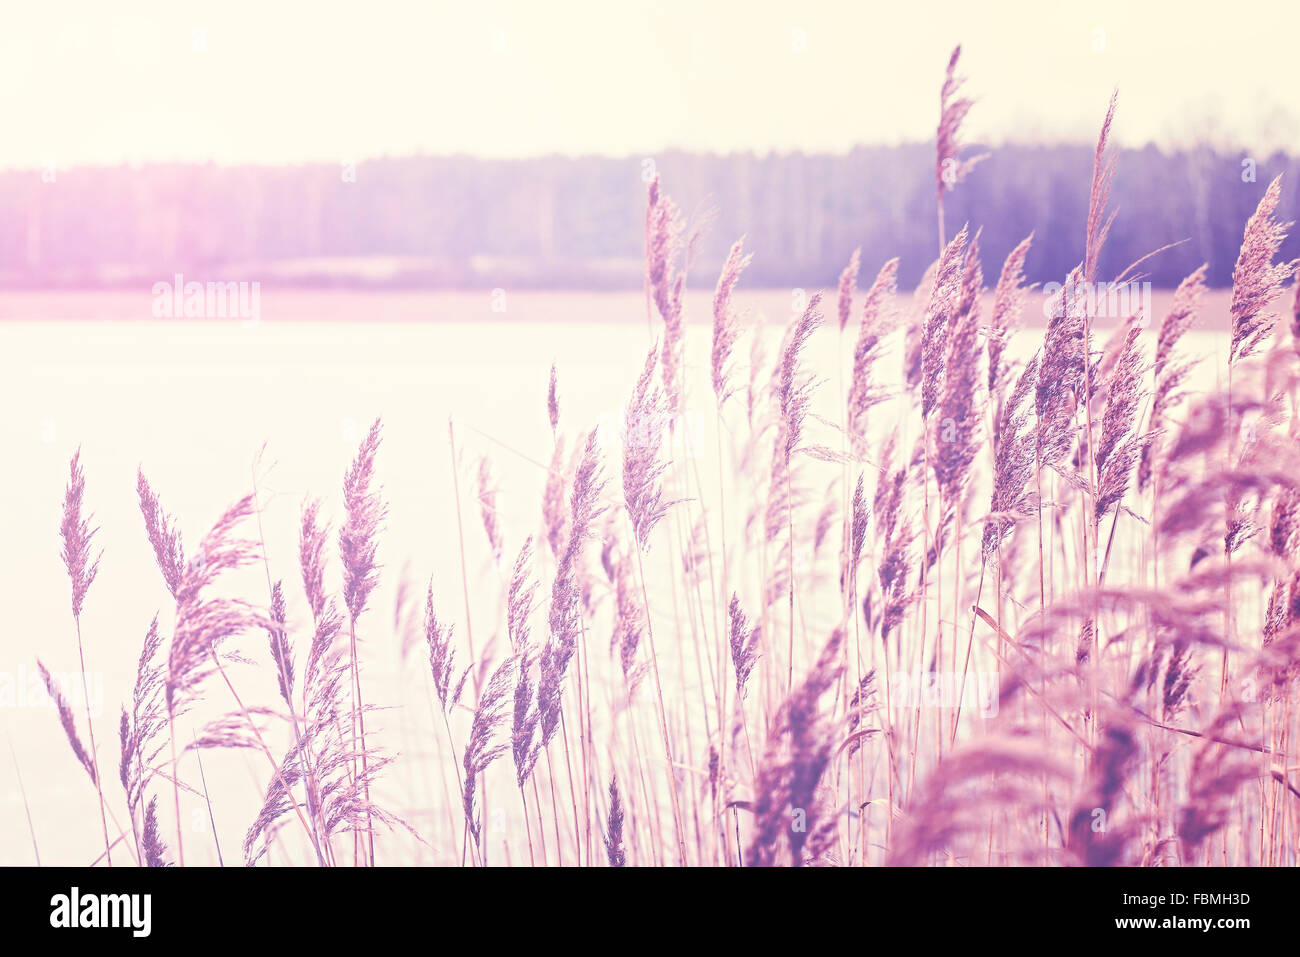 Vintage getönten Reed durch einen See, Natur Hintergrund, geringe Schärfentiefe. Stockfoto